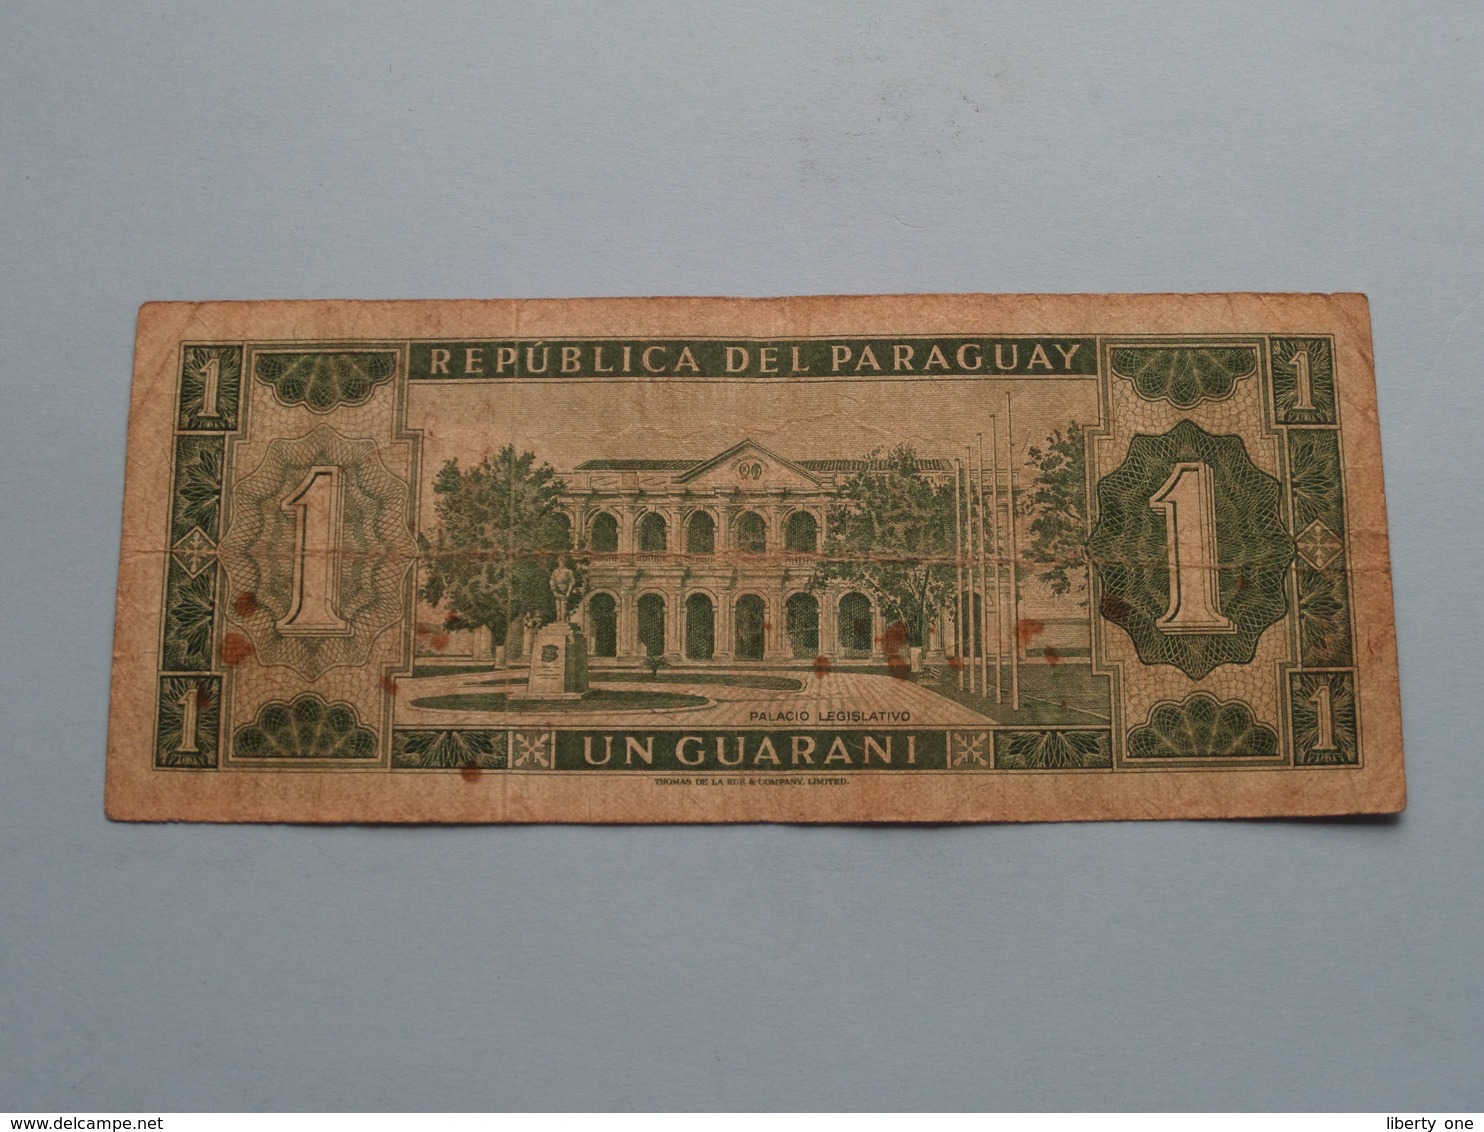 Un GUARANI 1 ( A25943774 ) 1952 - Banco Central Del Paraguay ( For Grade, Please See Photo ) ! - Paraguay